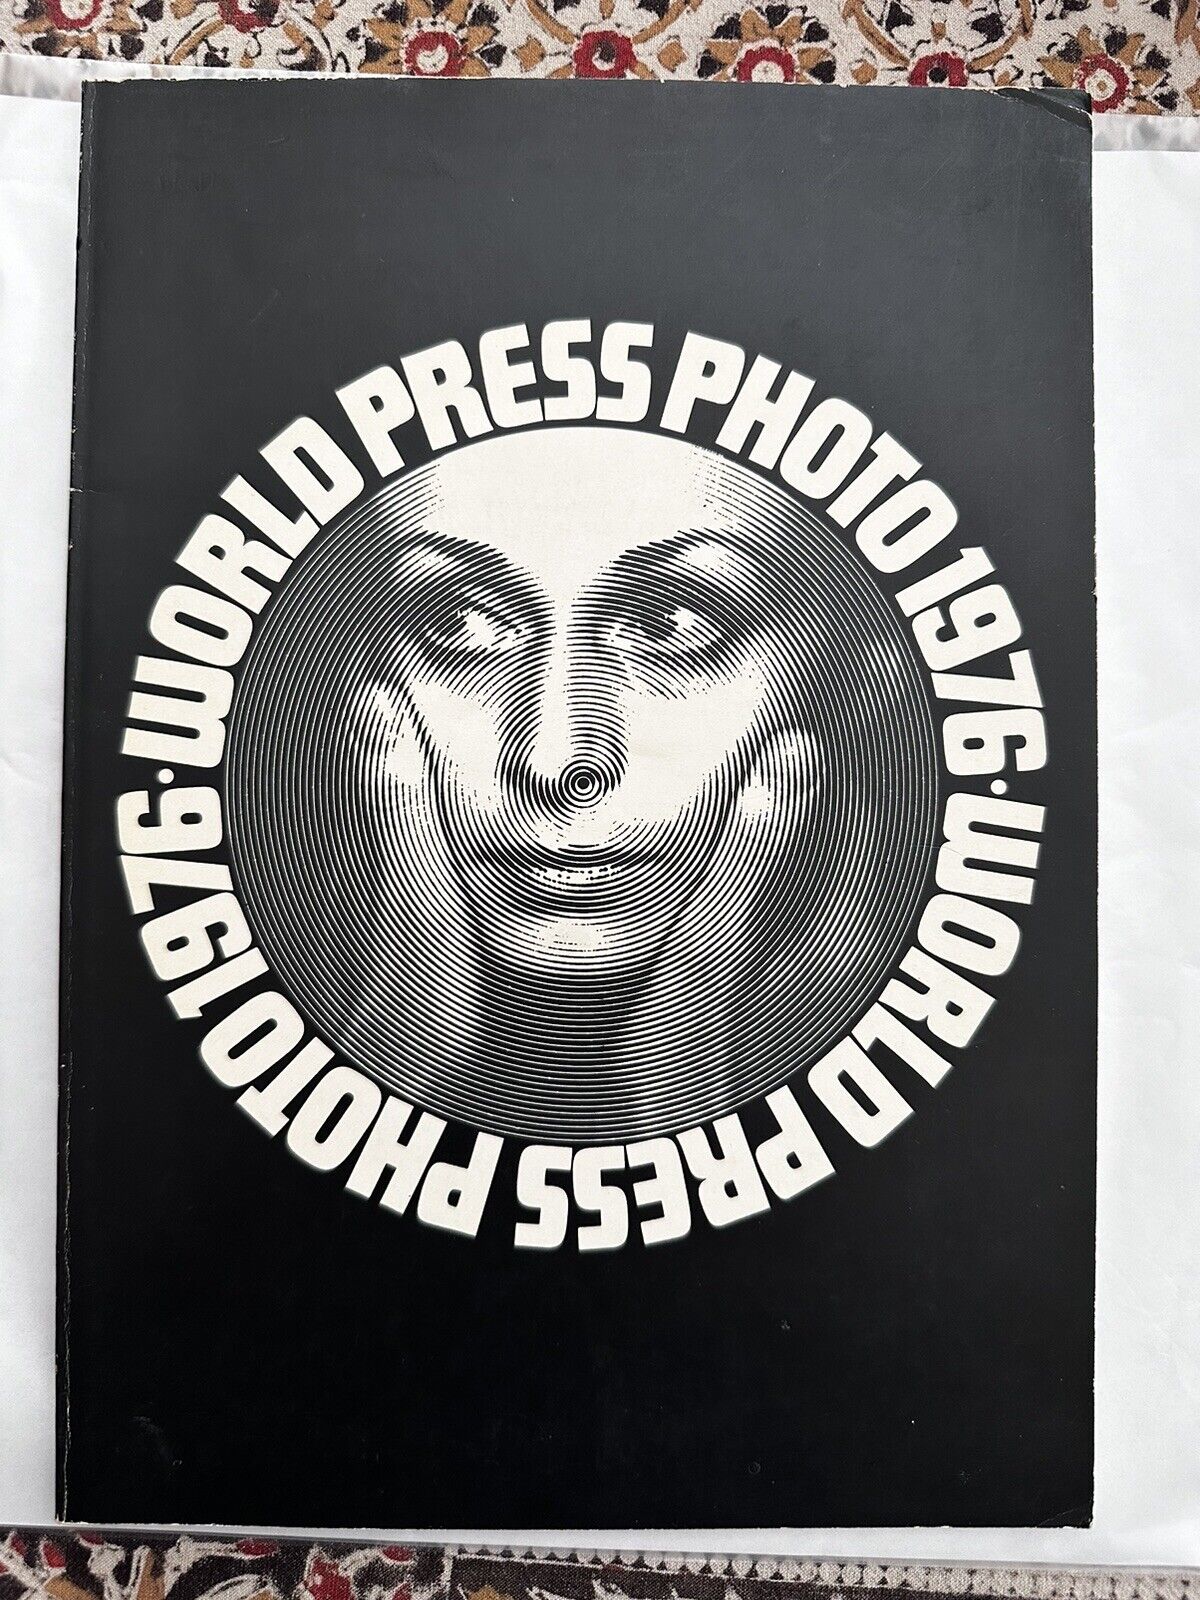 Vintage World Press Photo 1976 Book Jaarboek Boek Holland Award Winning 